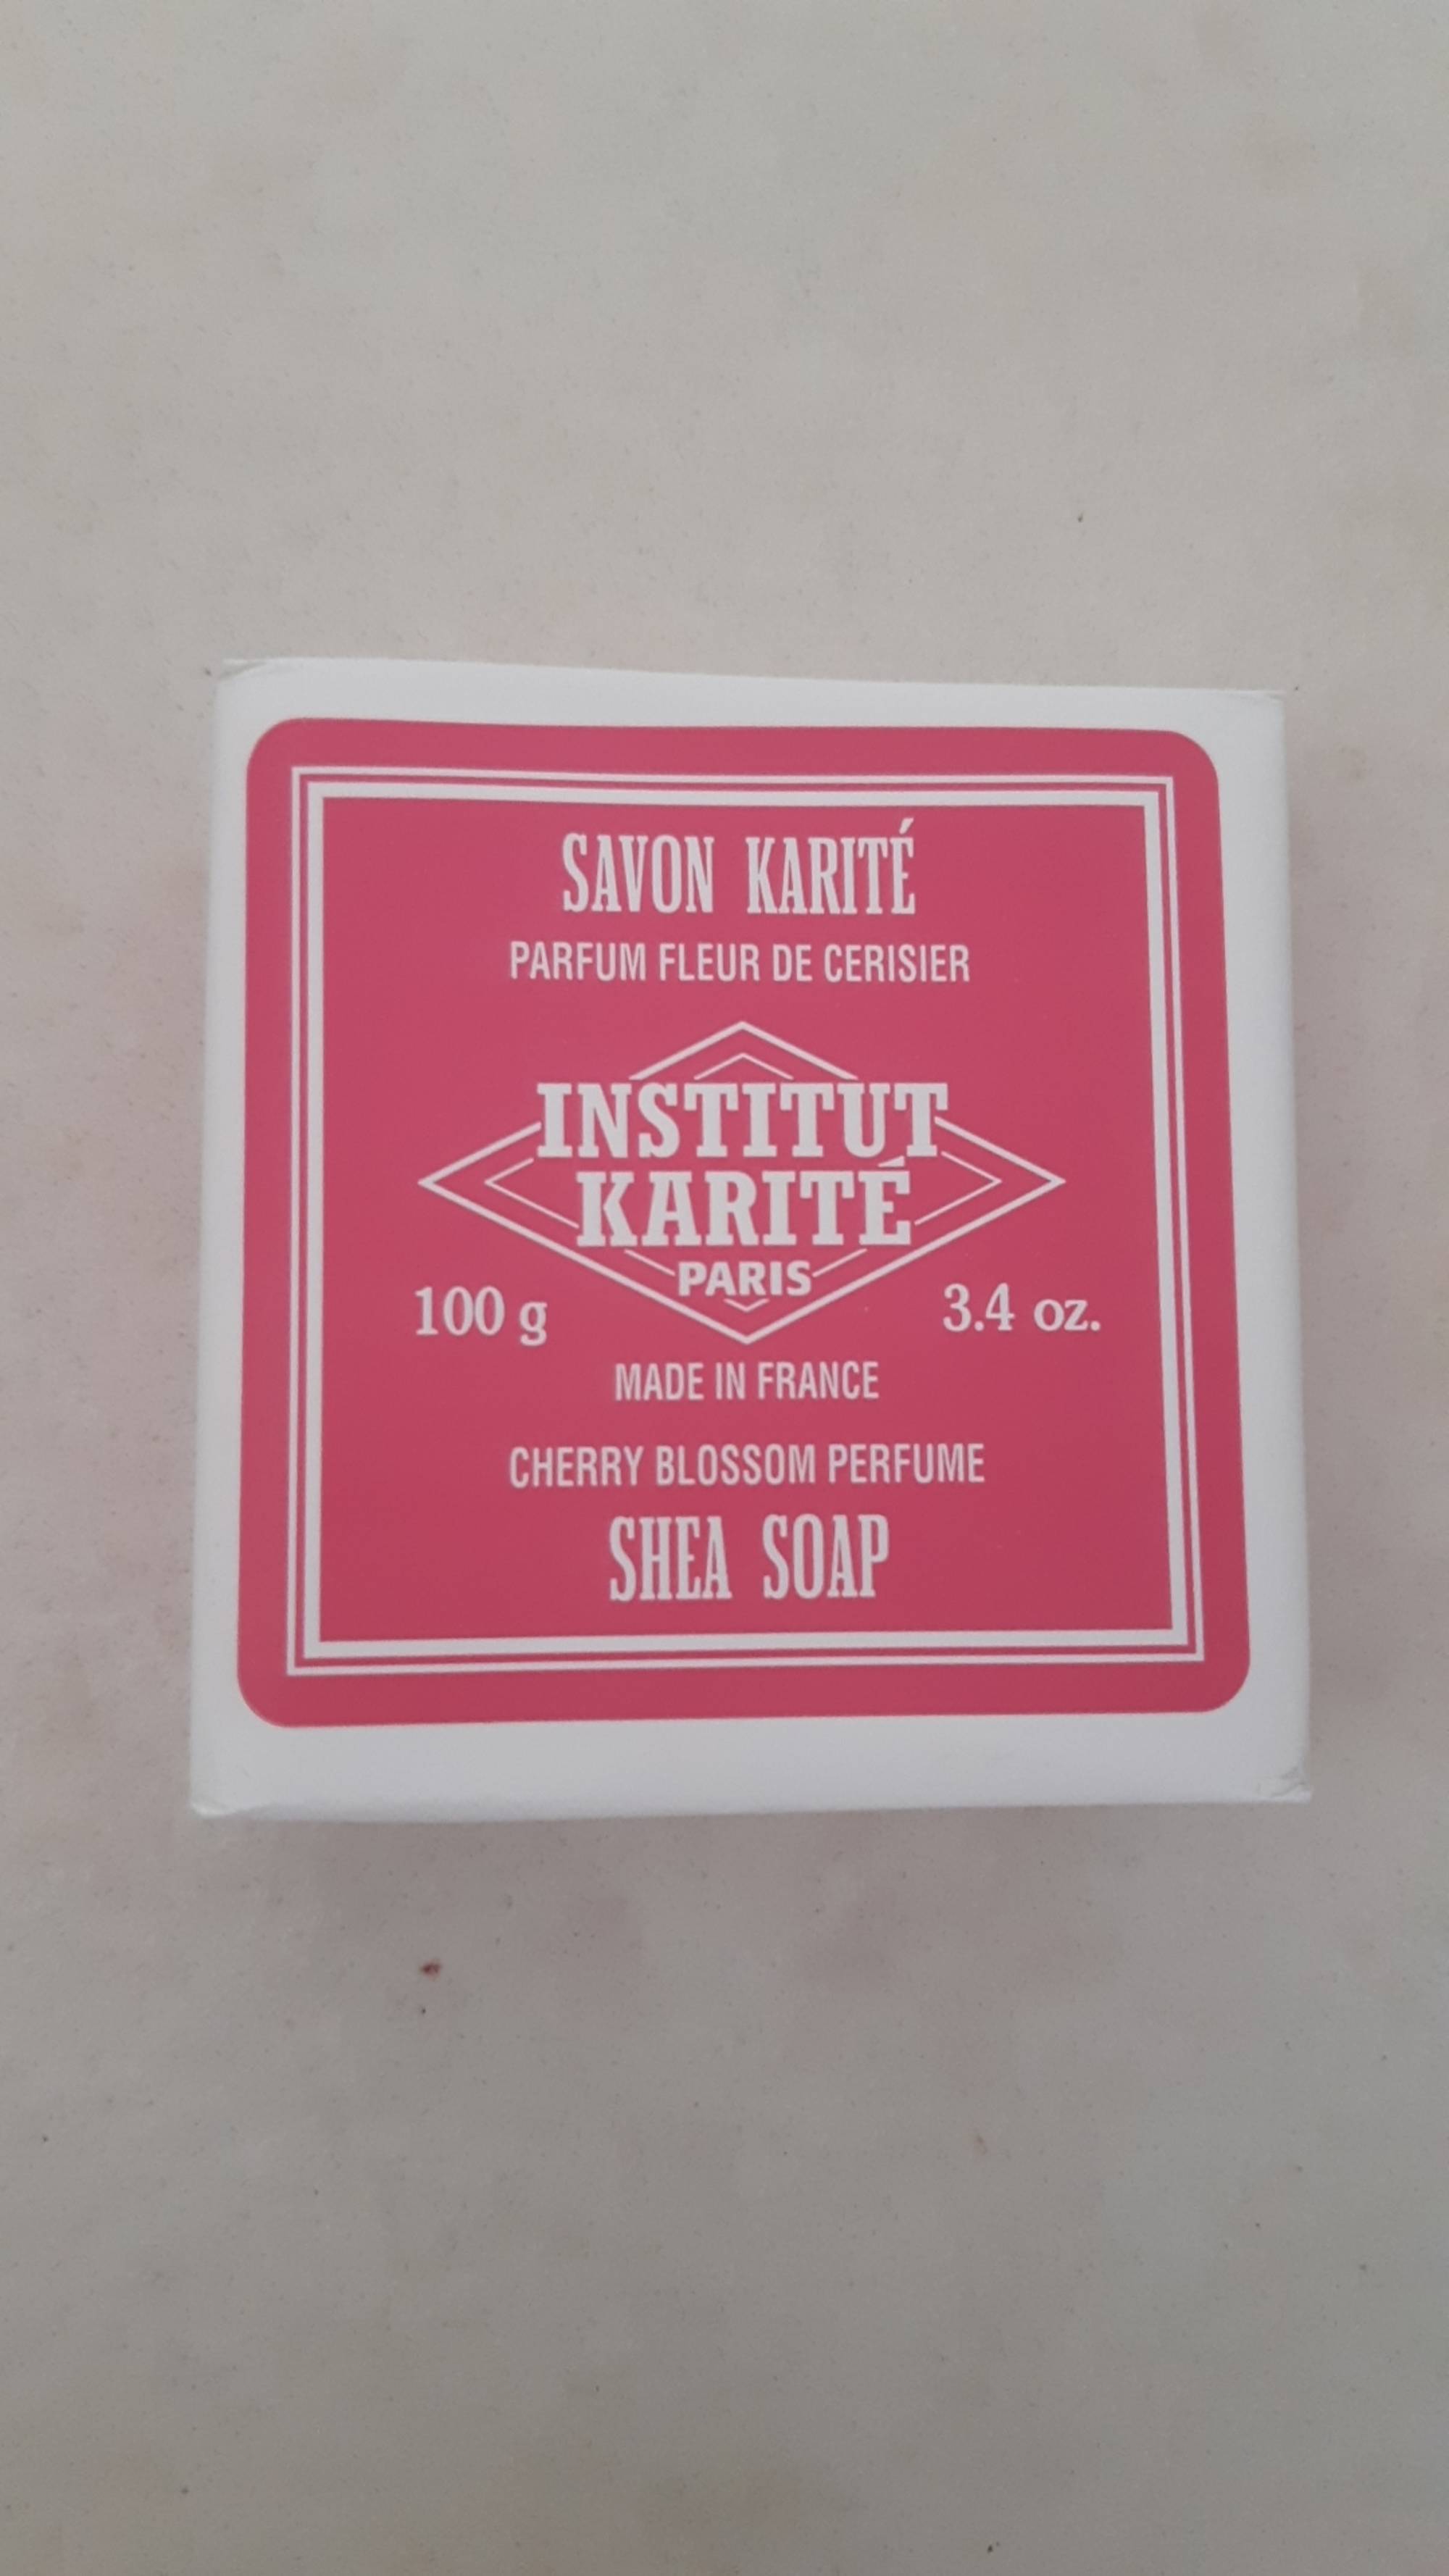 INSTITUT KARITÉ - Savon karité - Parfum fleur de cerisier